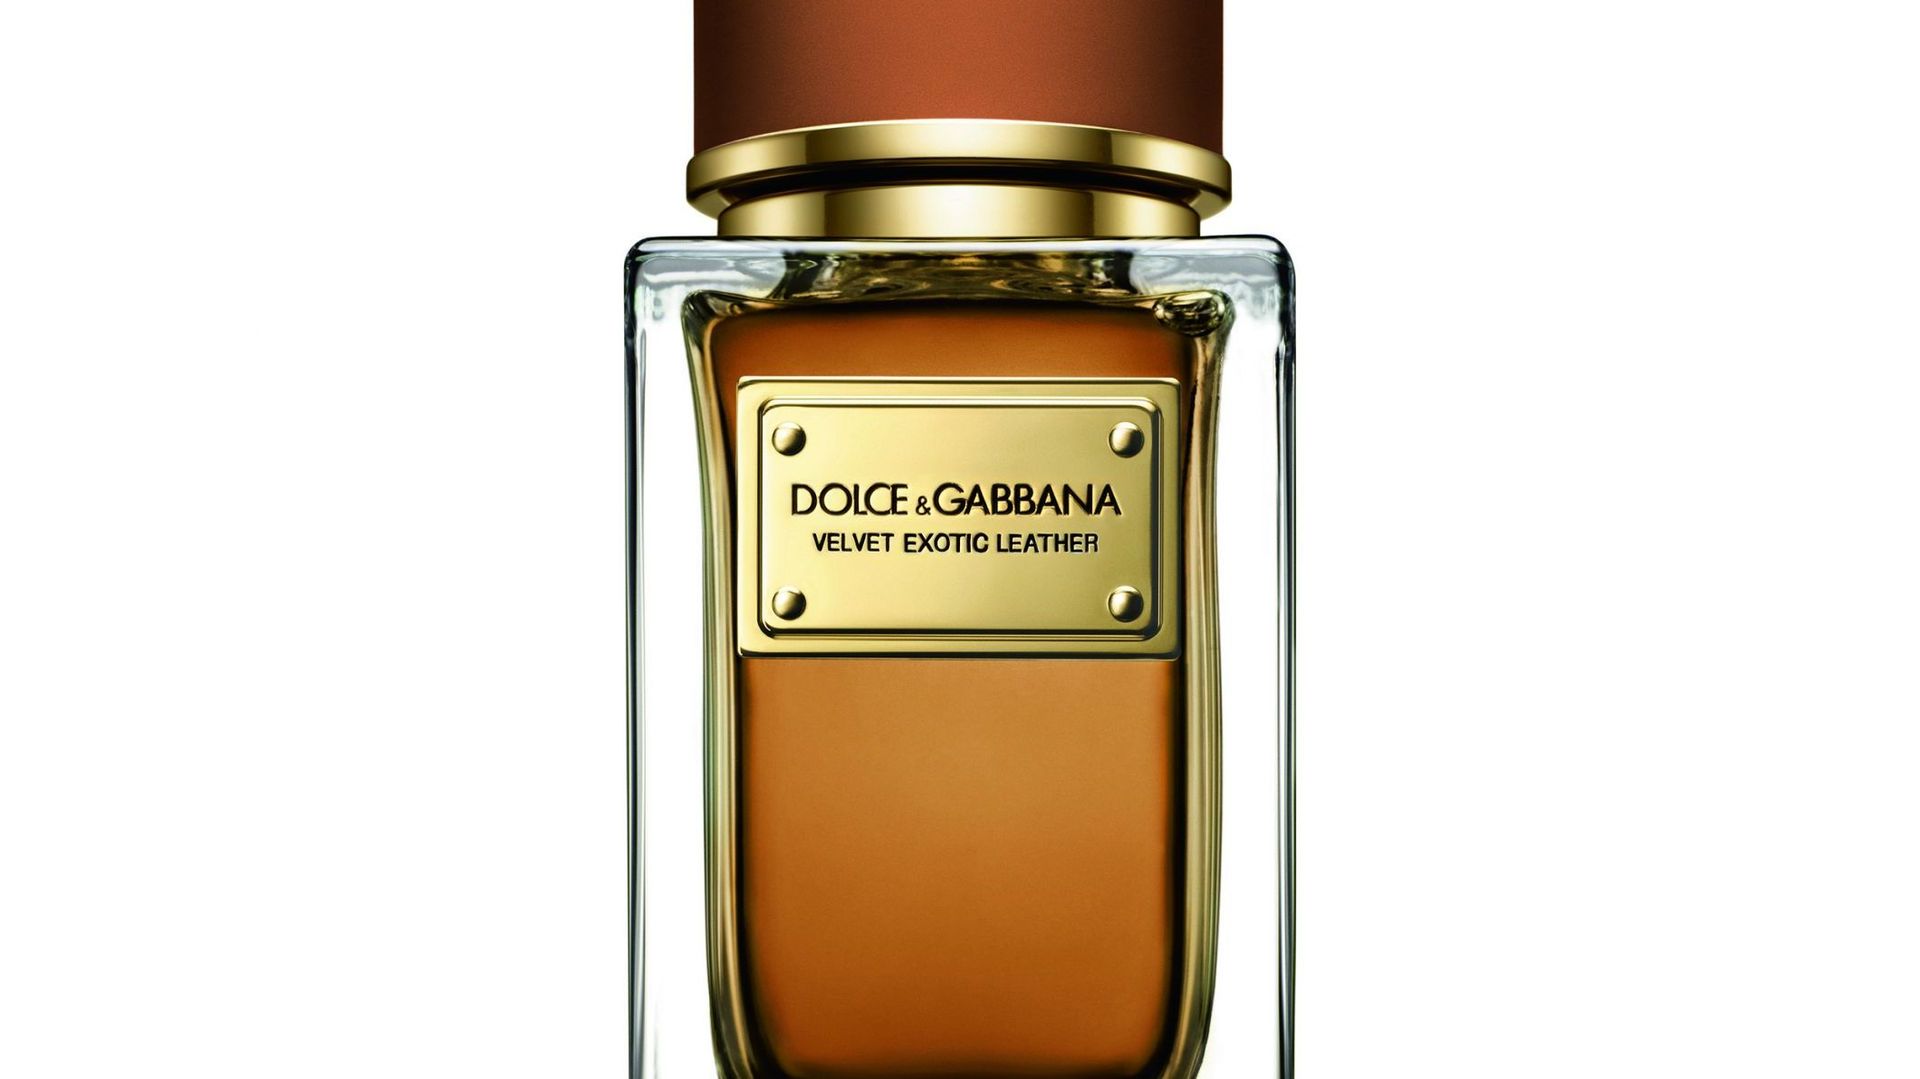 Le parfum "Velvet Exotic Leather" de Dolce & Gabbana sera disponible dans les boutiques Dolce & Gabbana dès septembre.